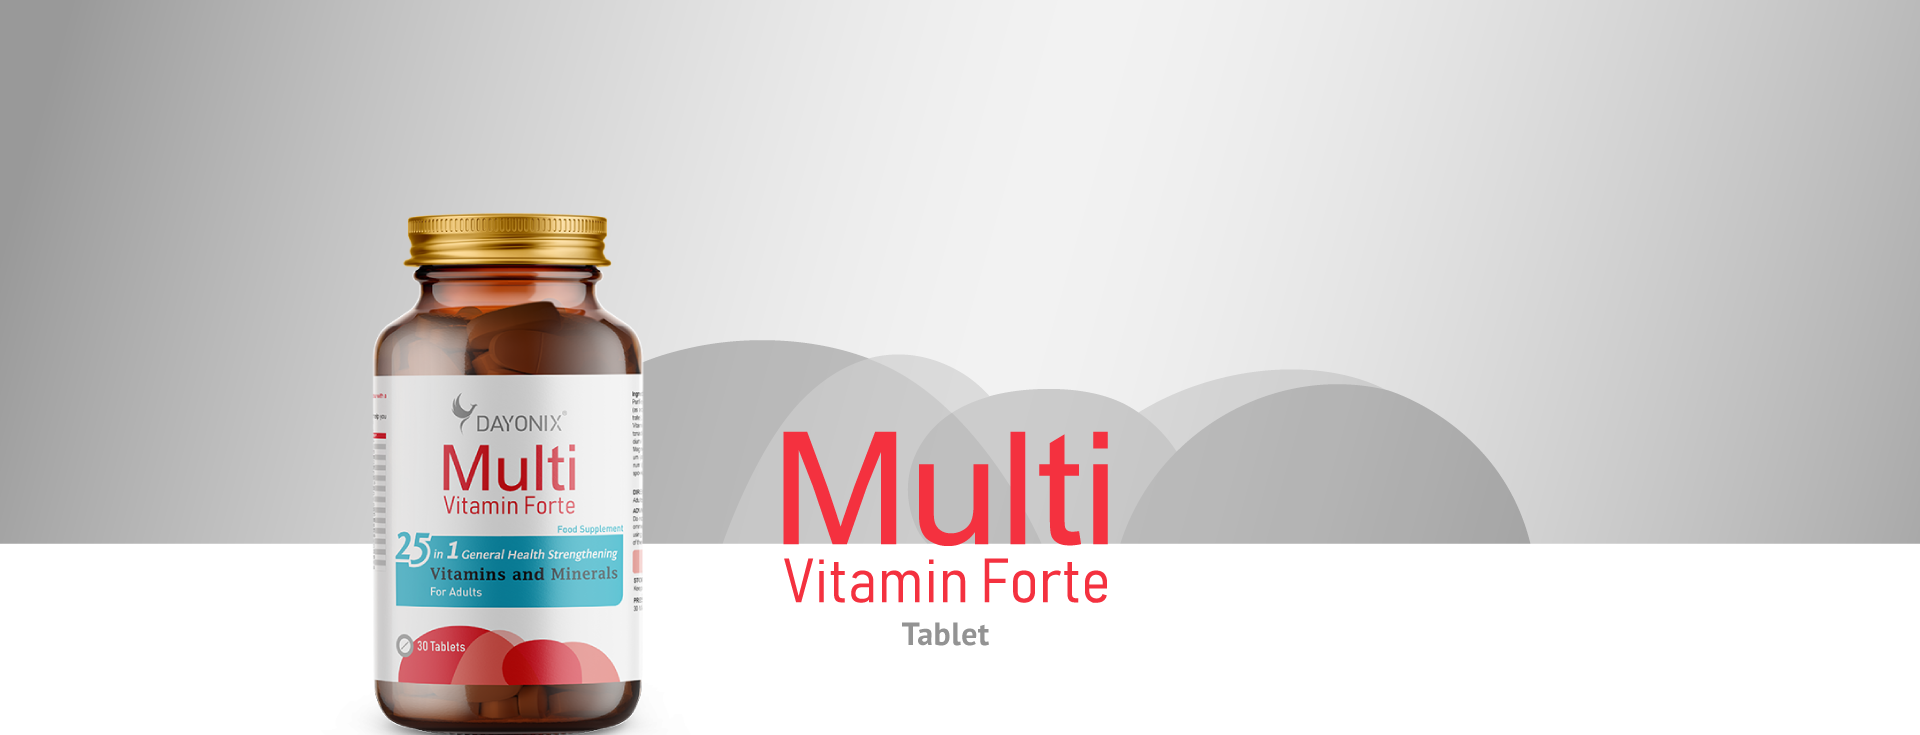 Multivitamin-Forte